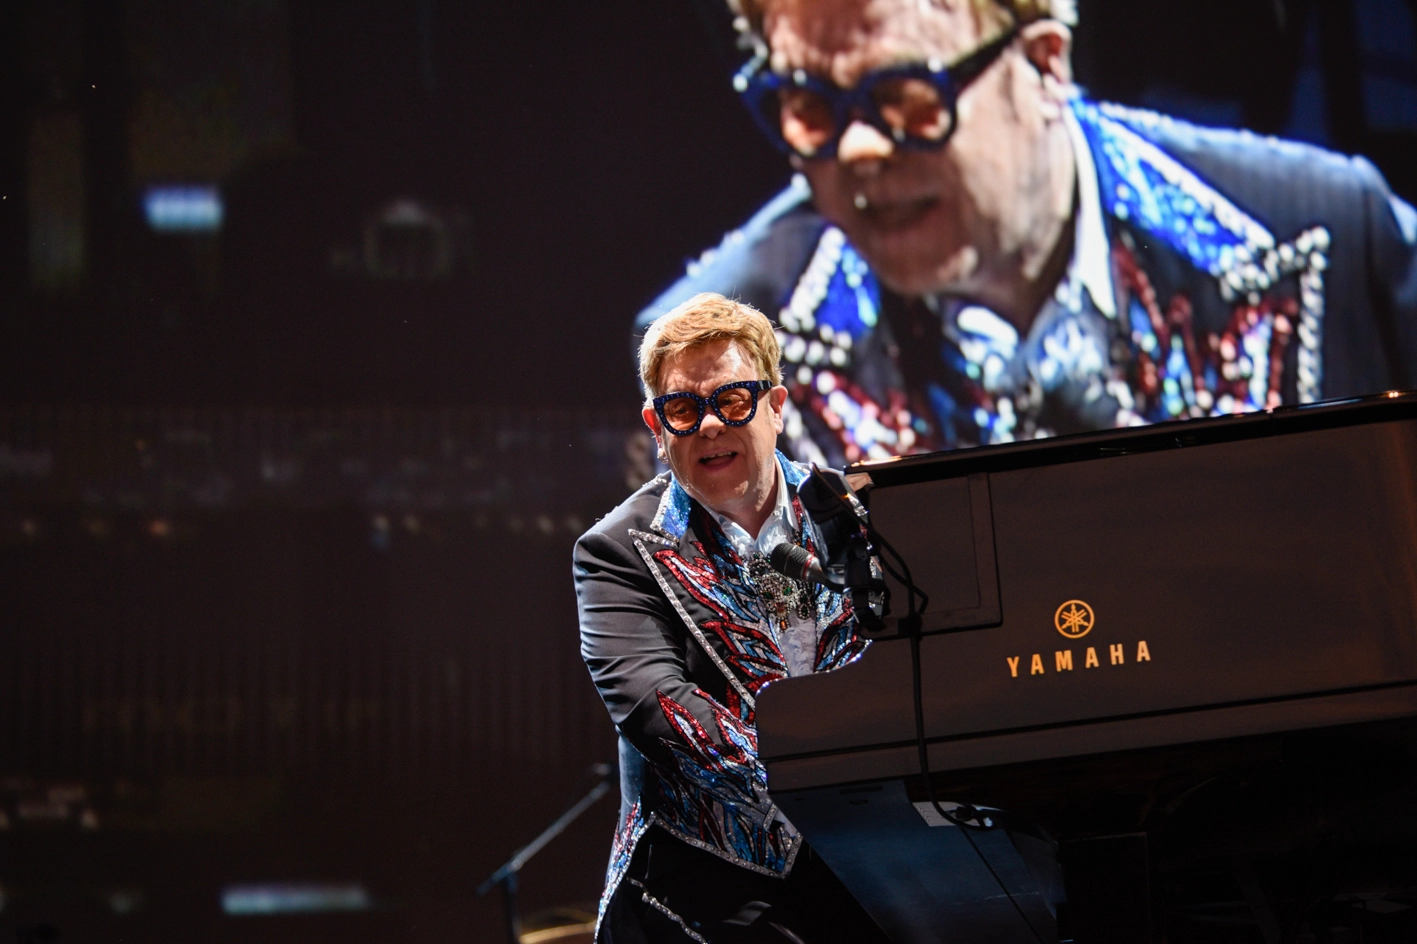 Un momento del concerto di Elton John (Alcide)